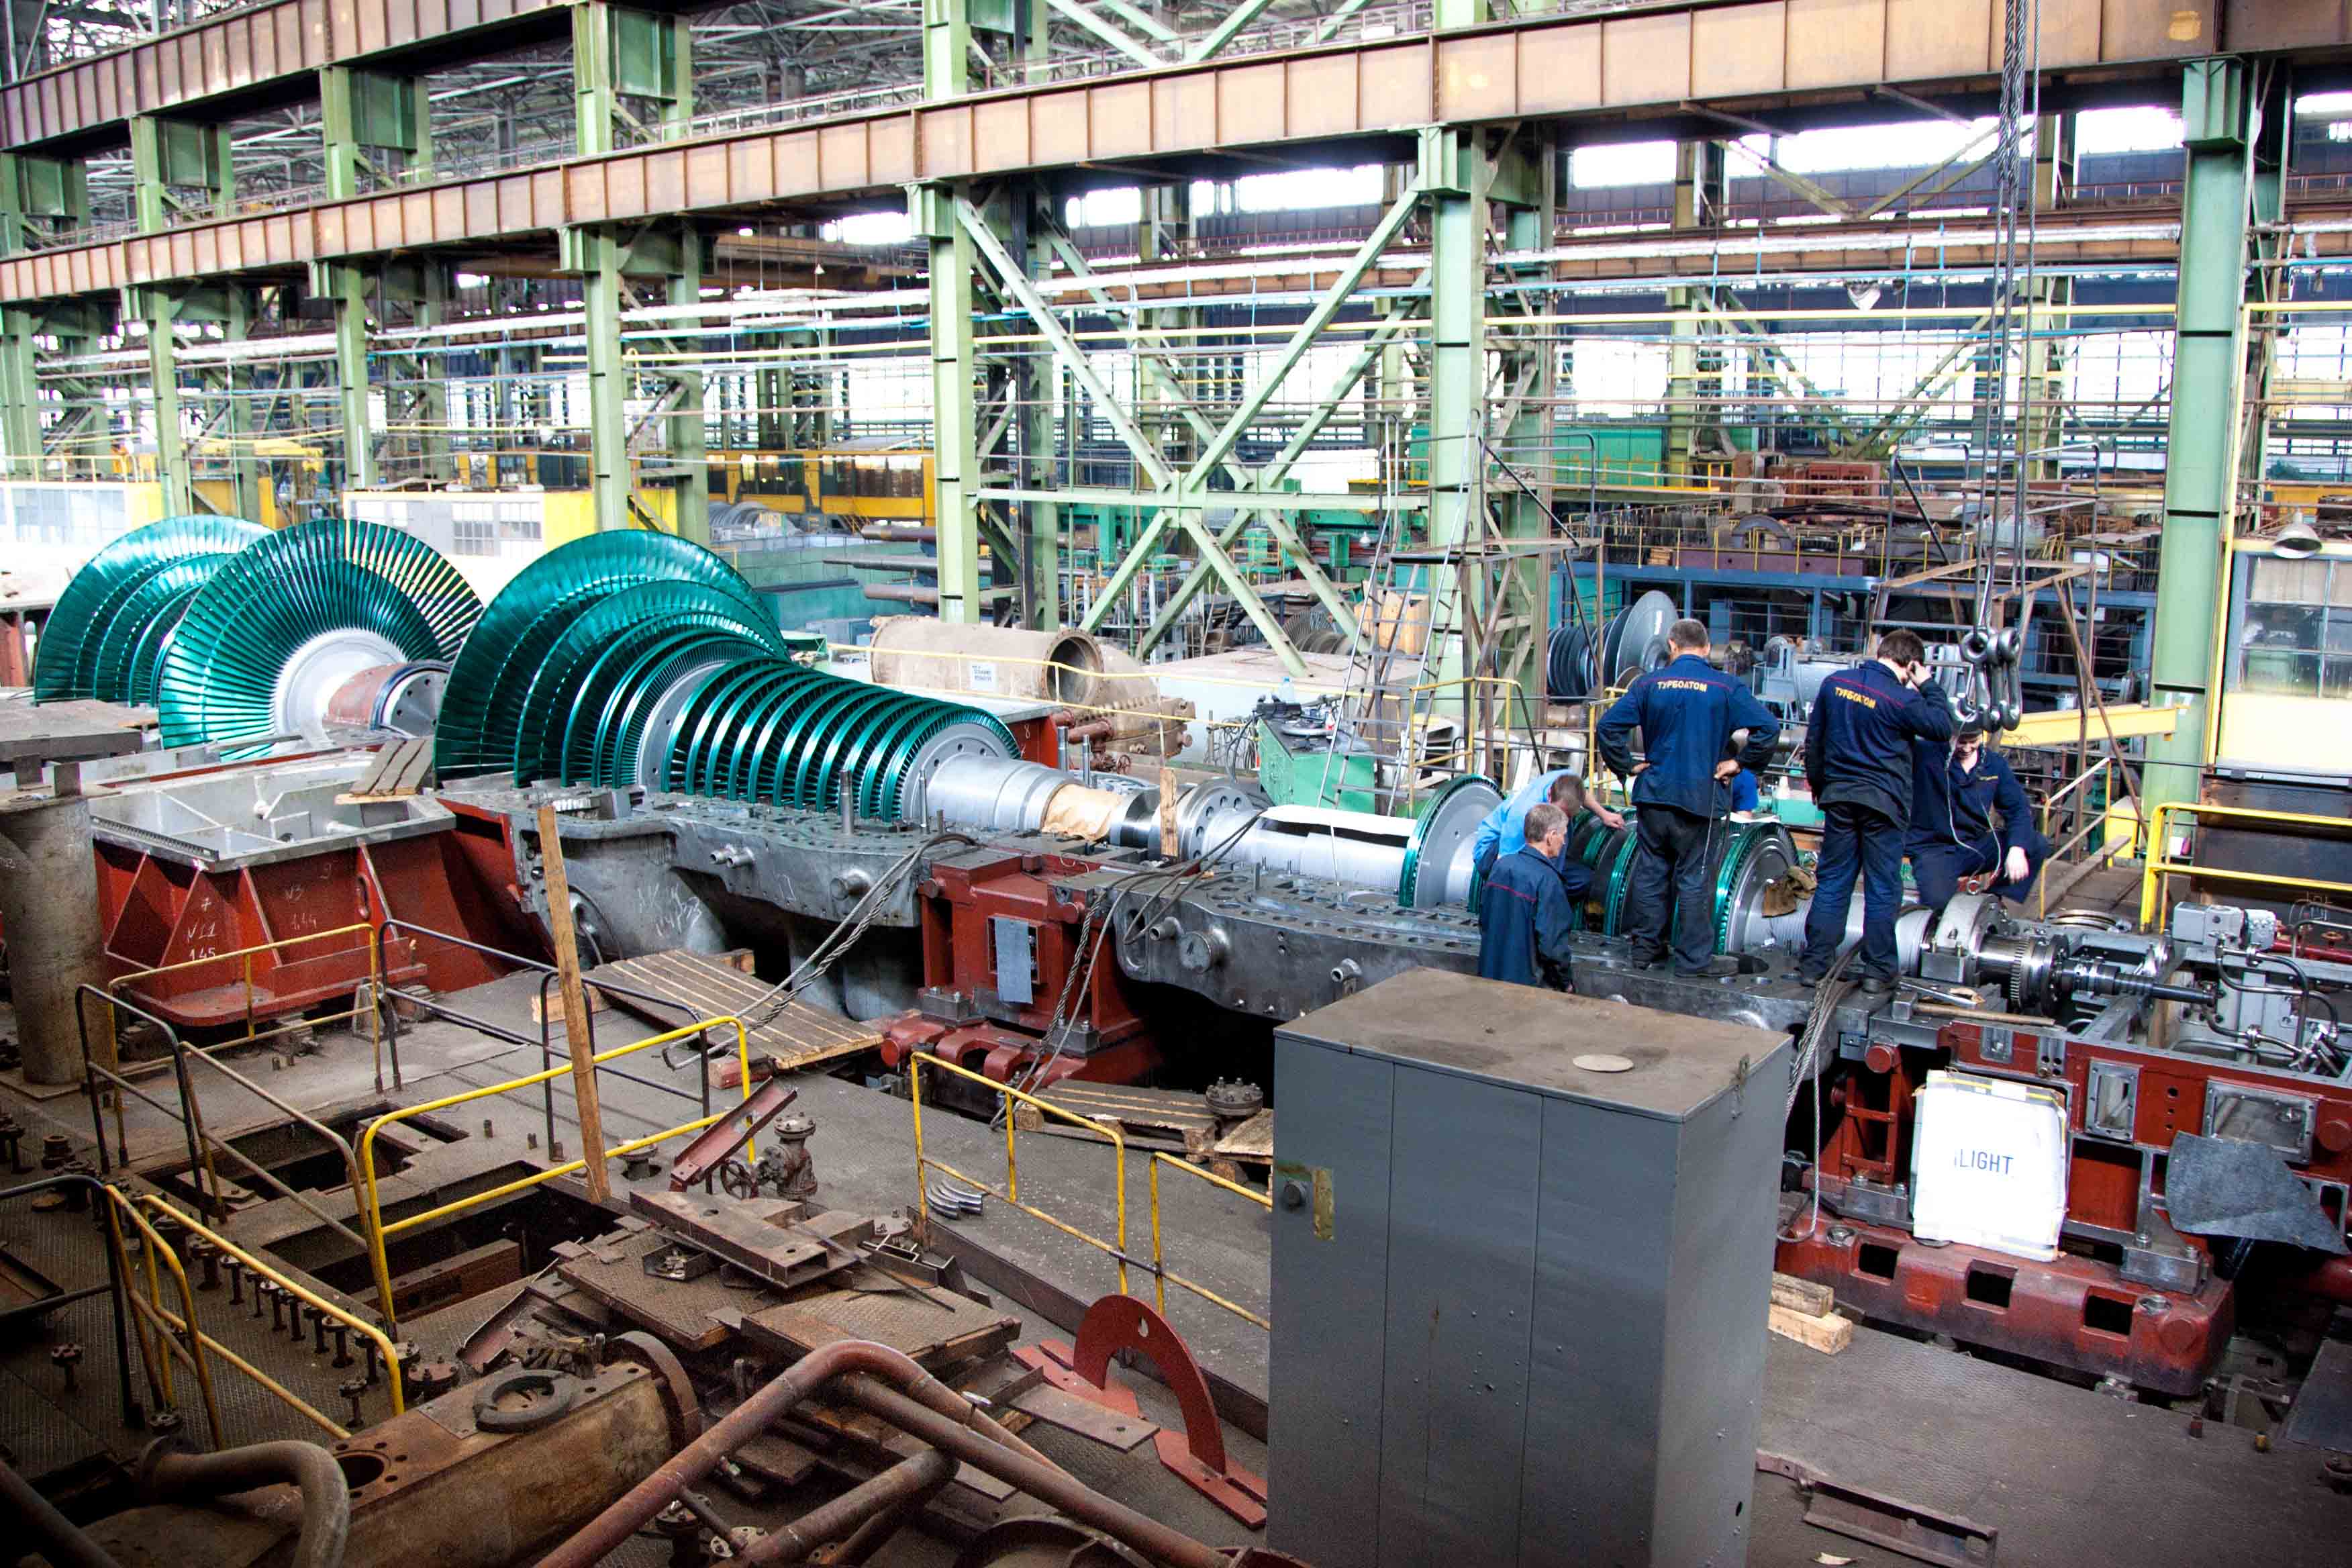 Збирання роторів на харківському ПАТ «Турбоатом», яке є дуже важливим підприємством в Україні. Фото з сайту turboatom.com.ua 